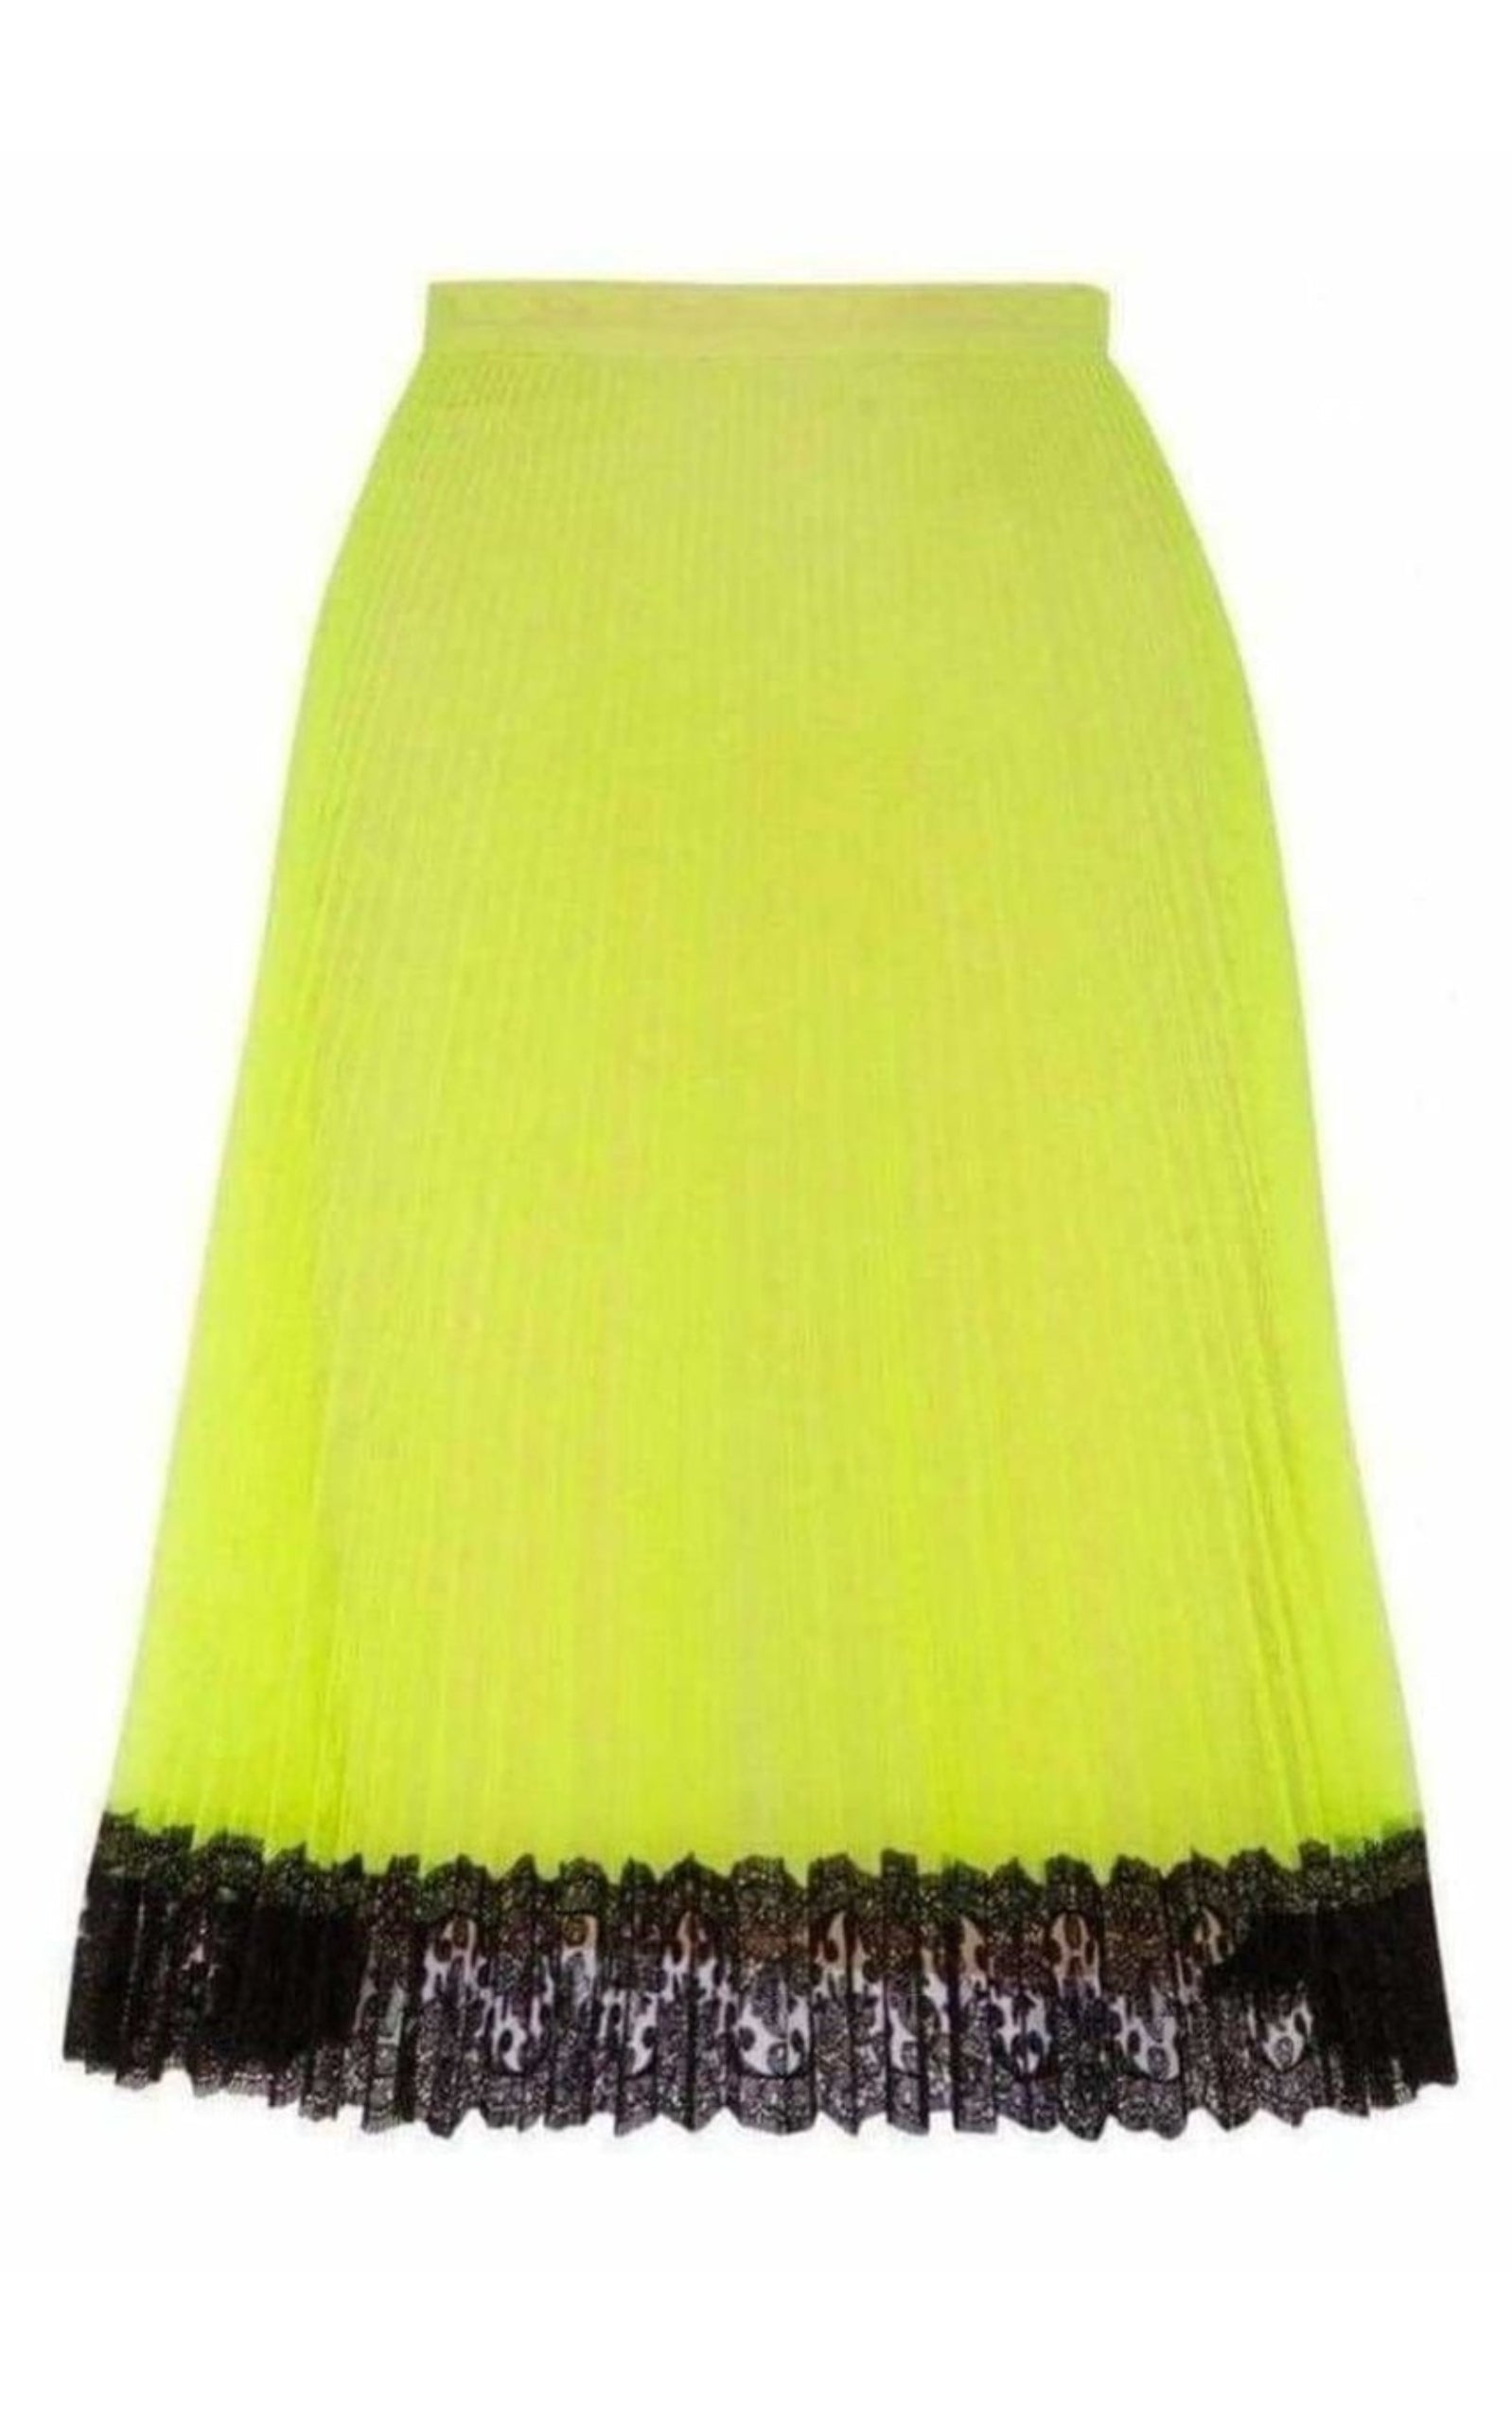  Christopher KaneLace Trimmed Neon Tulle Skirt - Runway Catalog